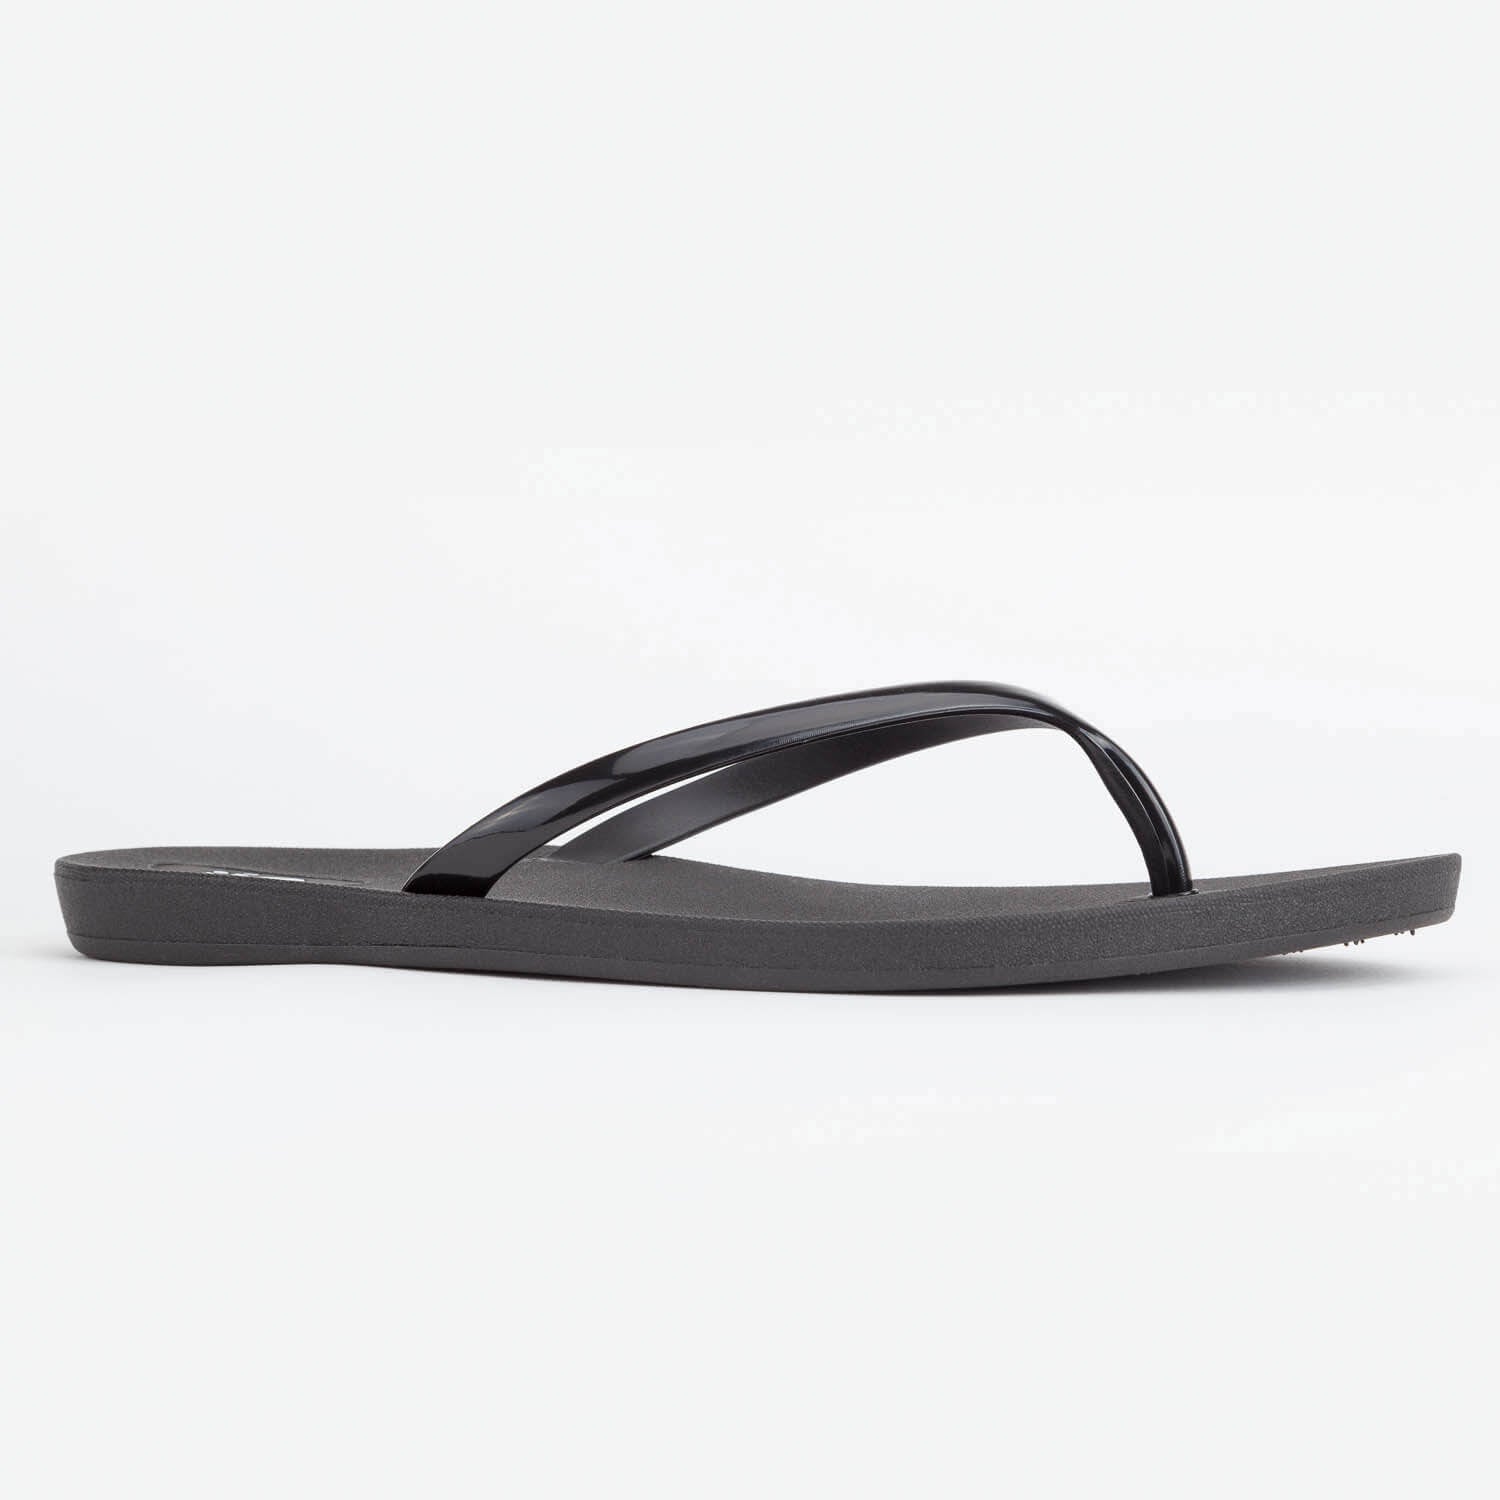 me Women's Strap Sandals - Black - Size 10